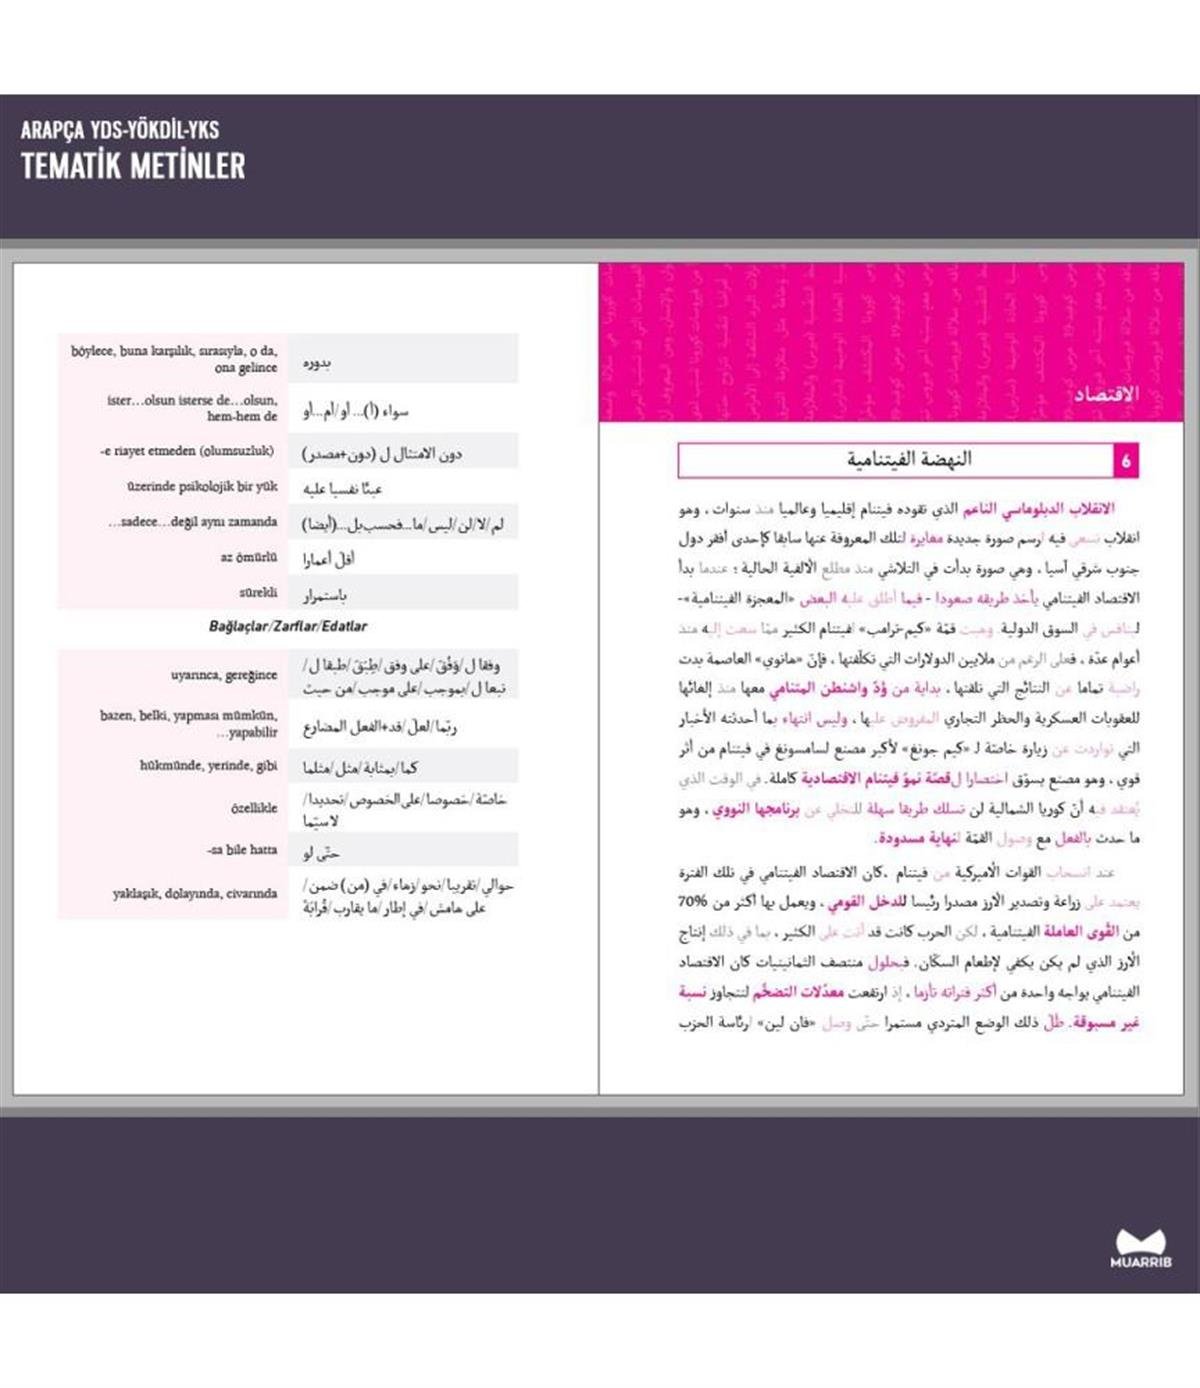 Arapça YDS-YÖKDİL-YDT Tematik Metinler